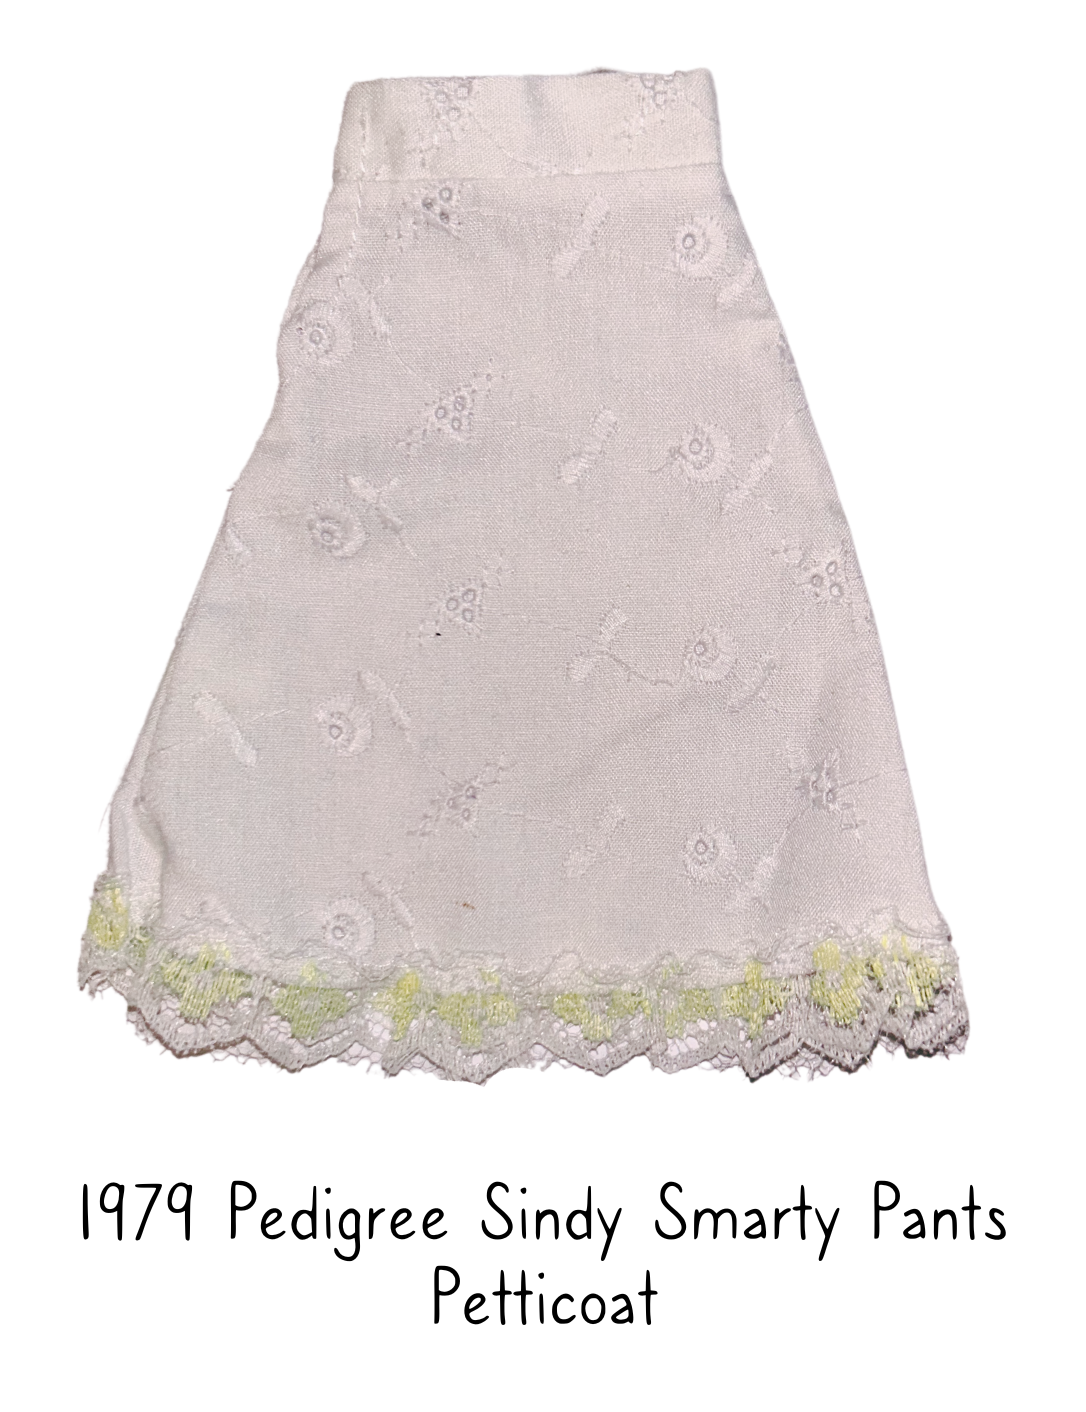 1979 Pedigree Sindy Smarty Pants Petticoat